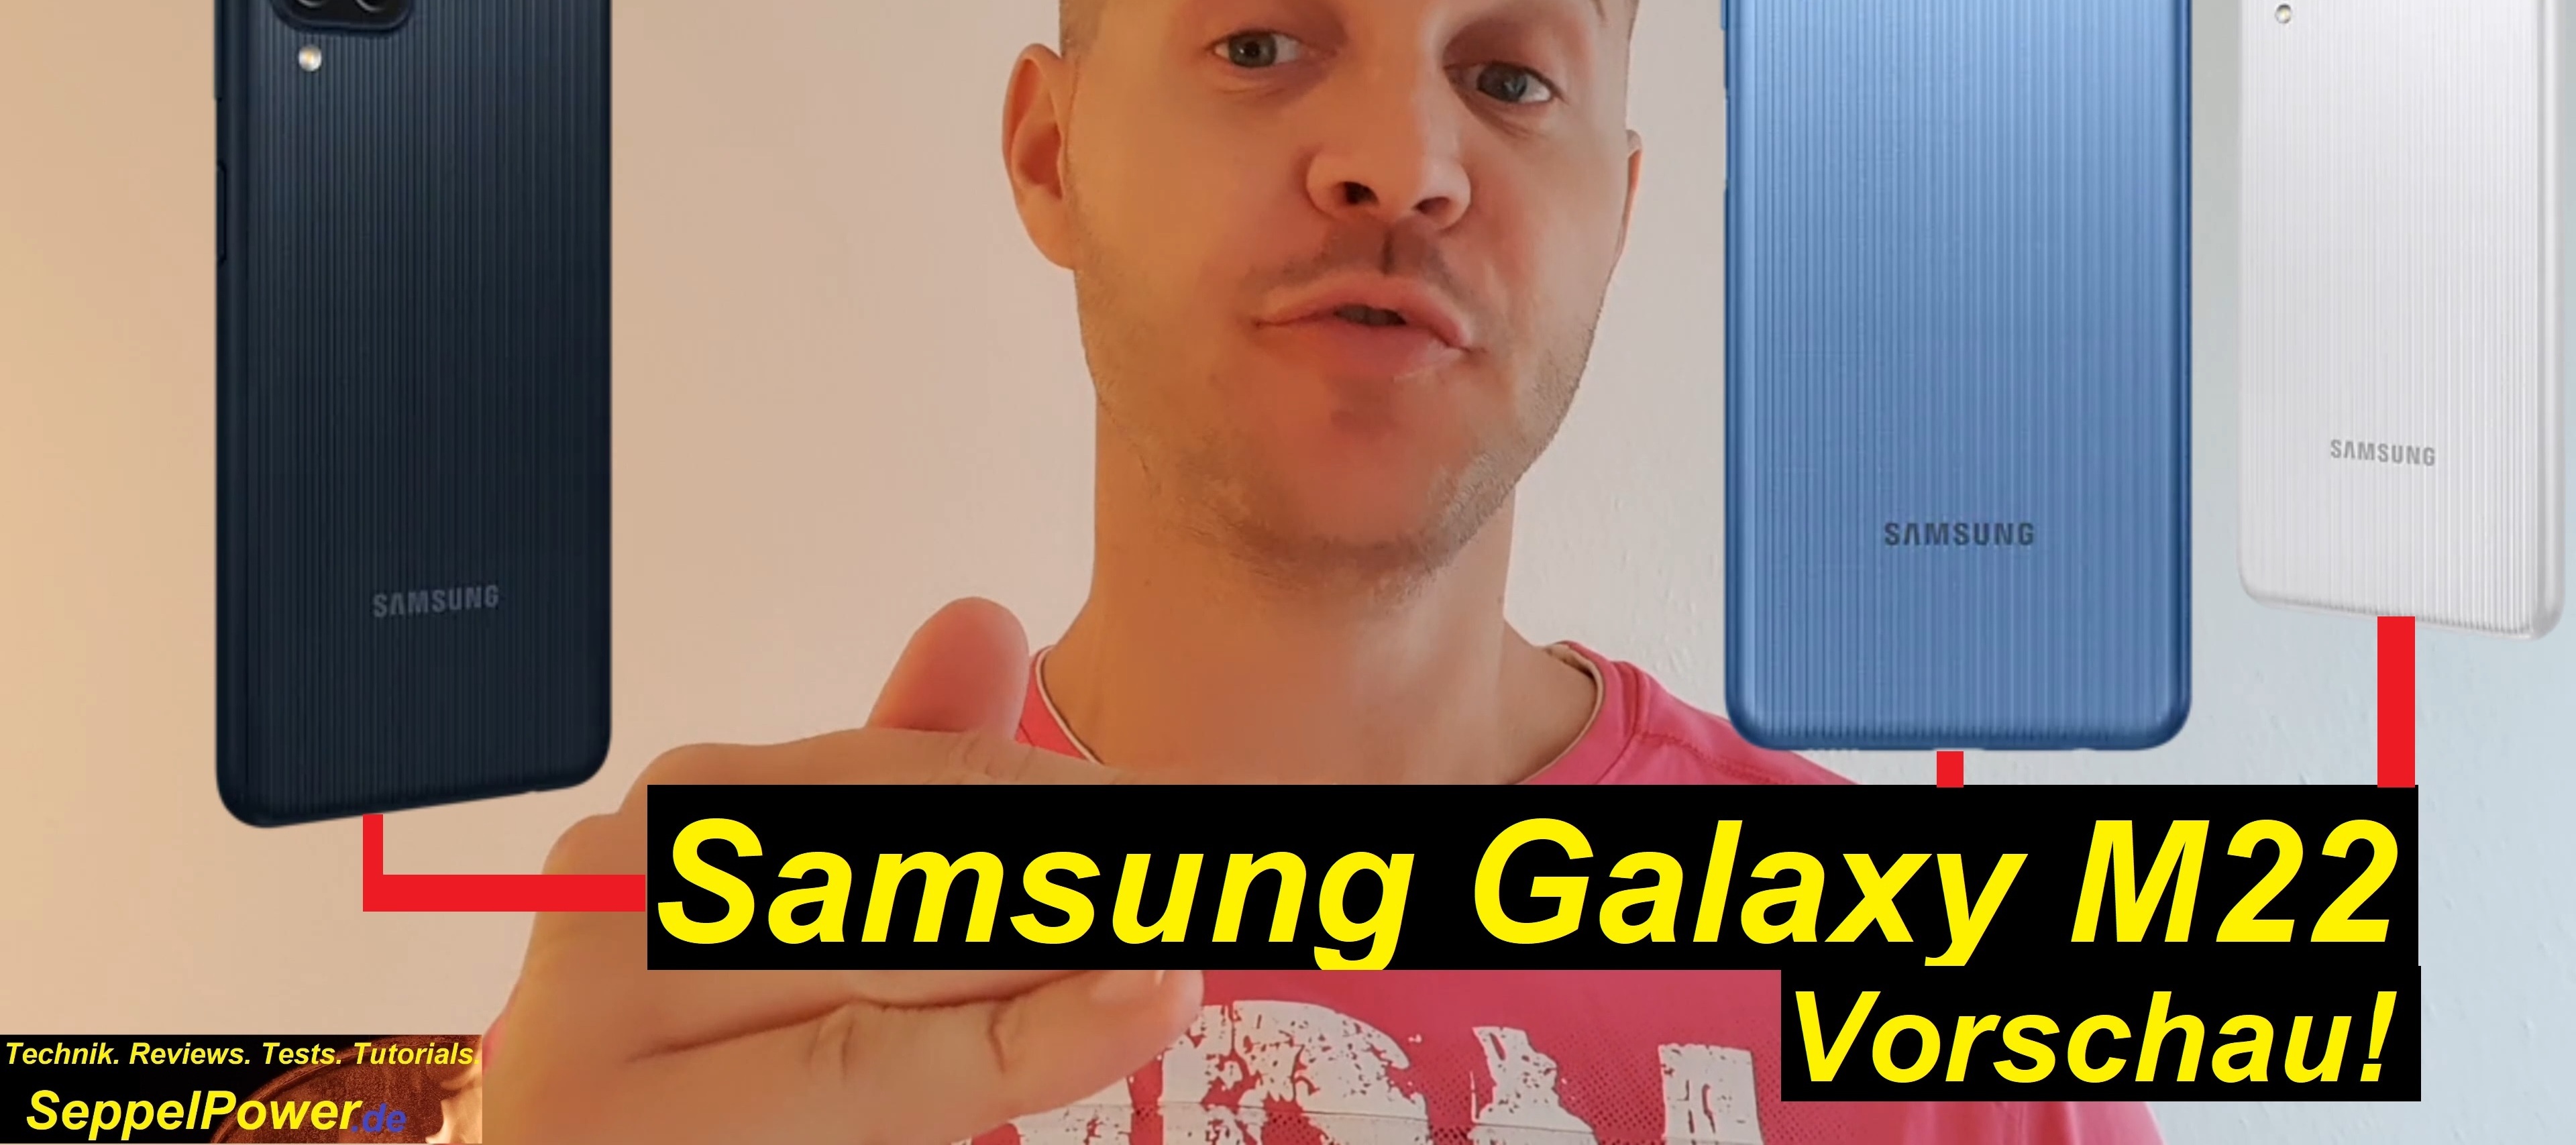 Samsung Galaxy M22 Vorschau